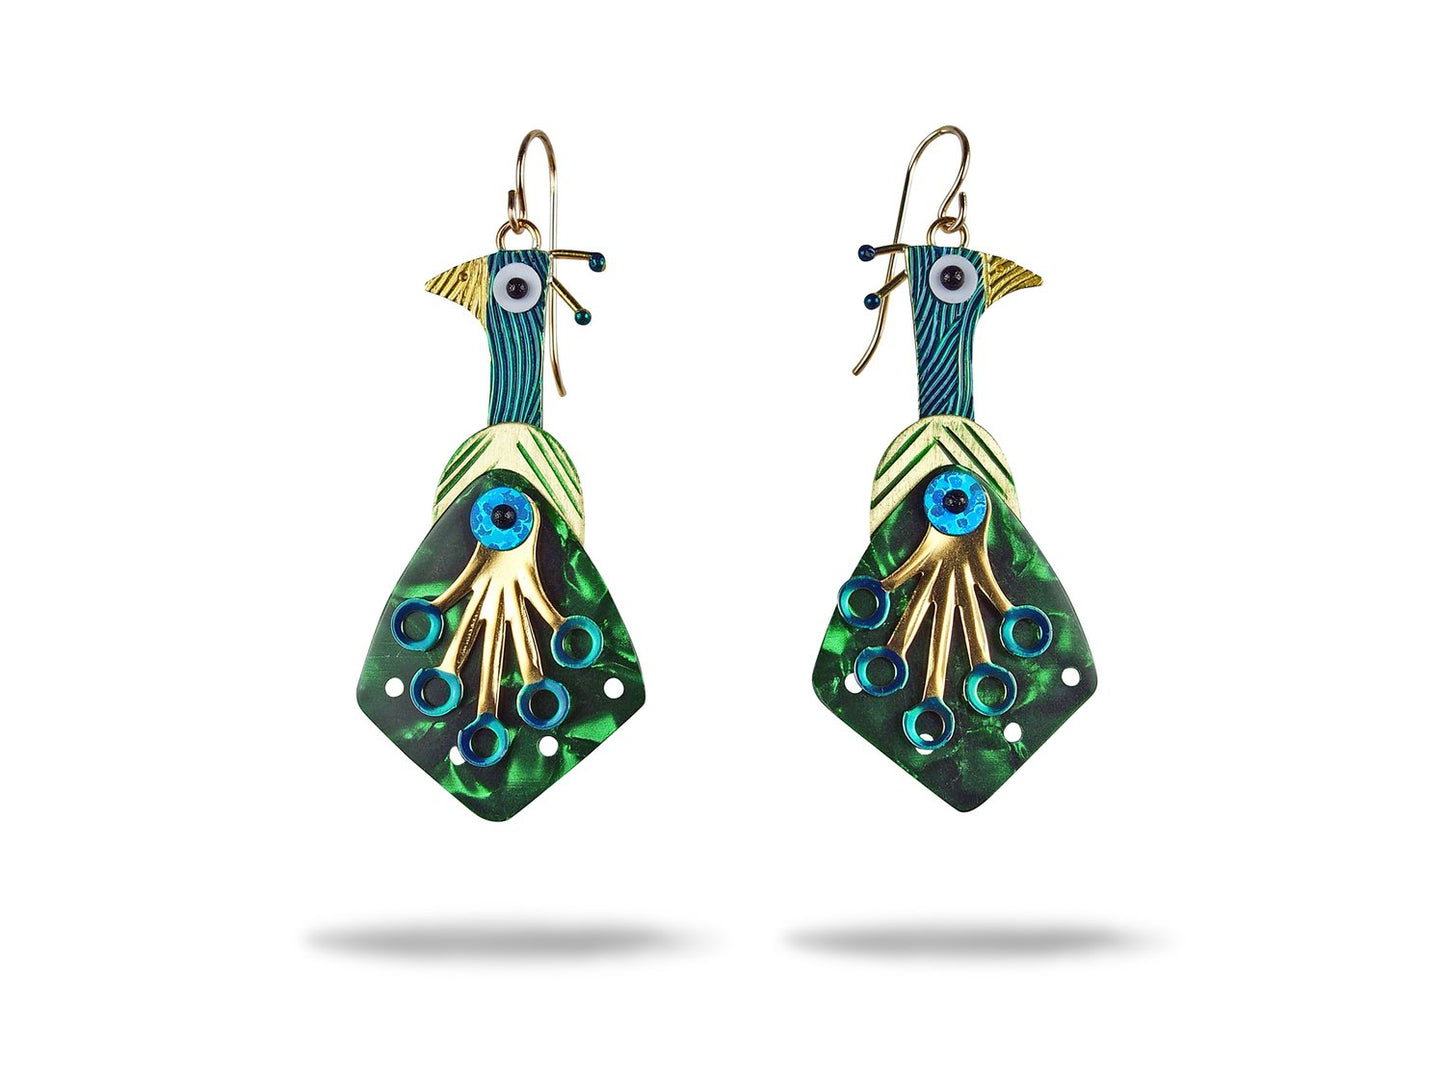 Peacock Earrings | Chickenscratch